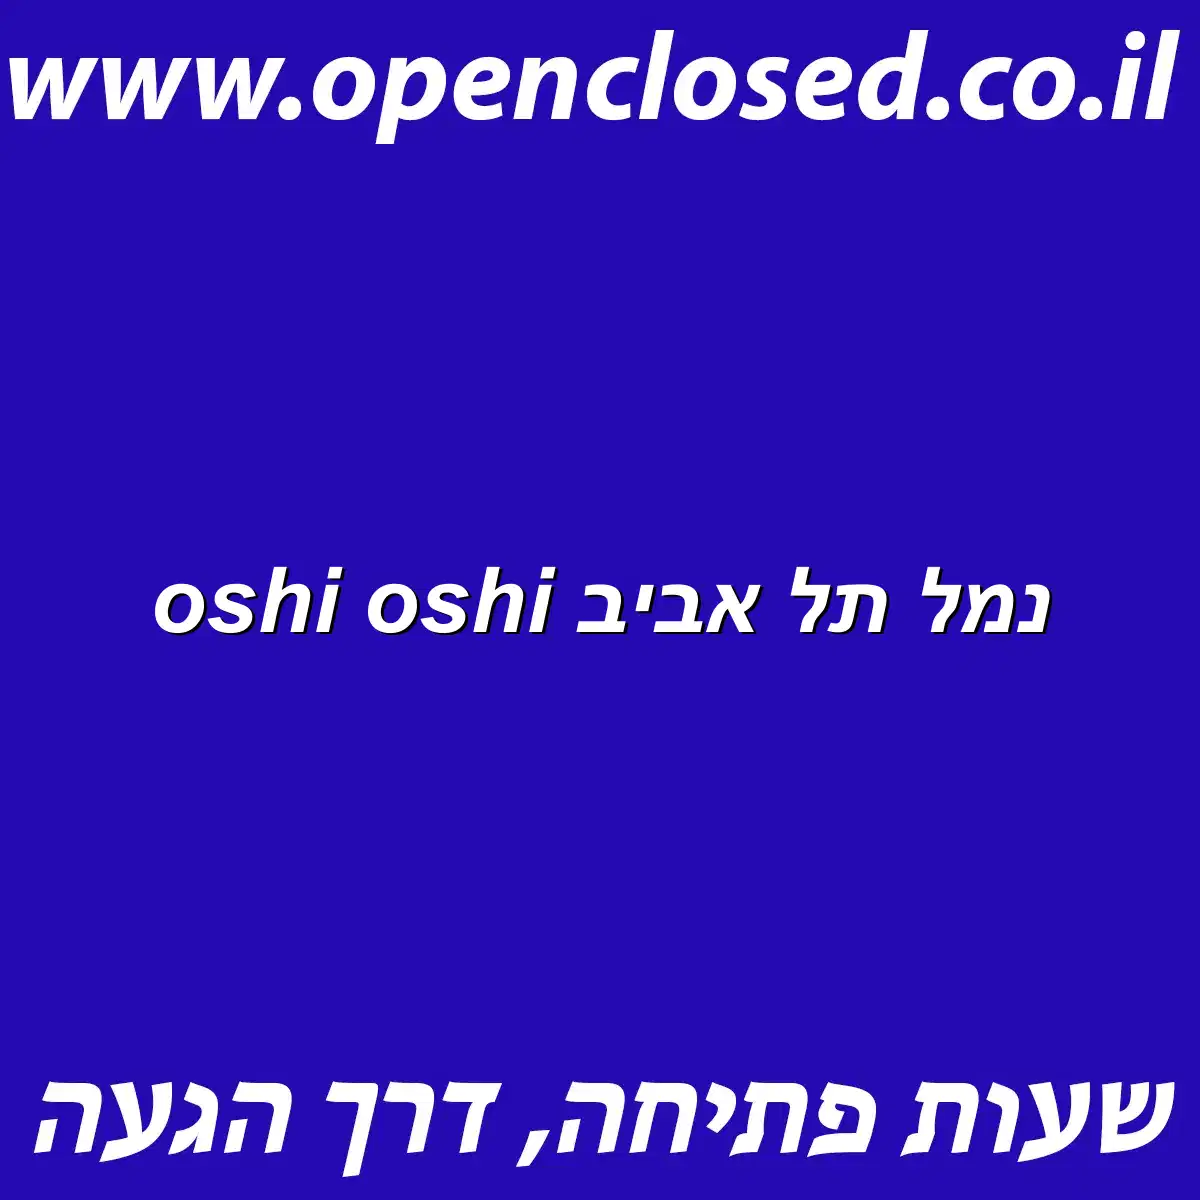 oshi oshi נמל תל אביב